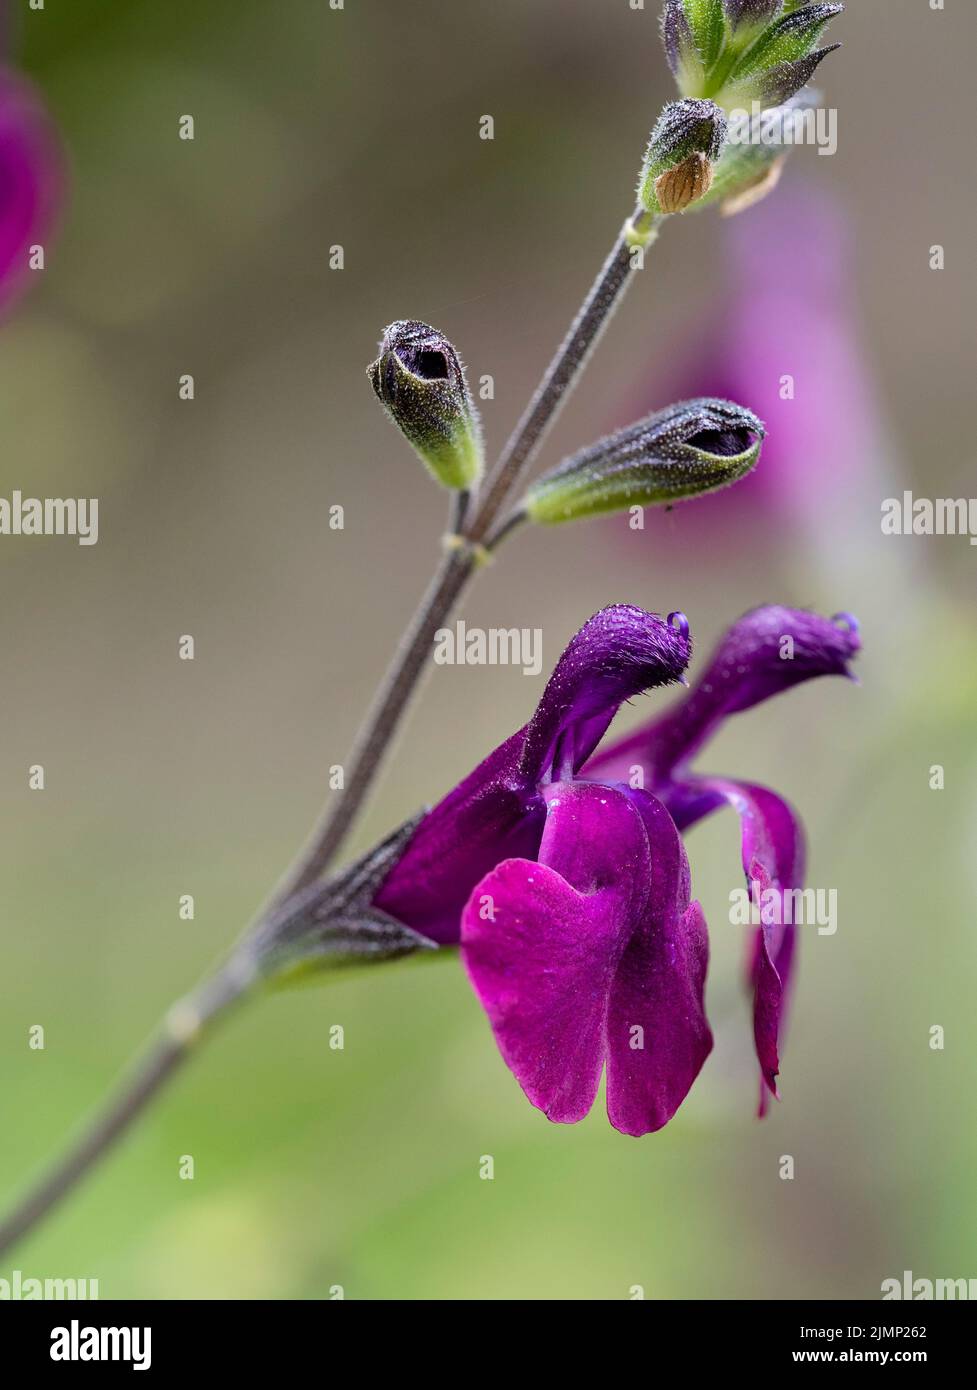 Les fleurs violettes de la sauge à rubis semi-rigide Salvia x jamensis 'Nachtvlinder' sont transportées du début de l'été à l'automne Banque D'Images